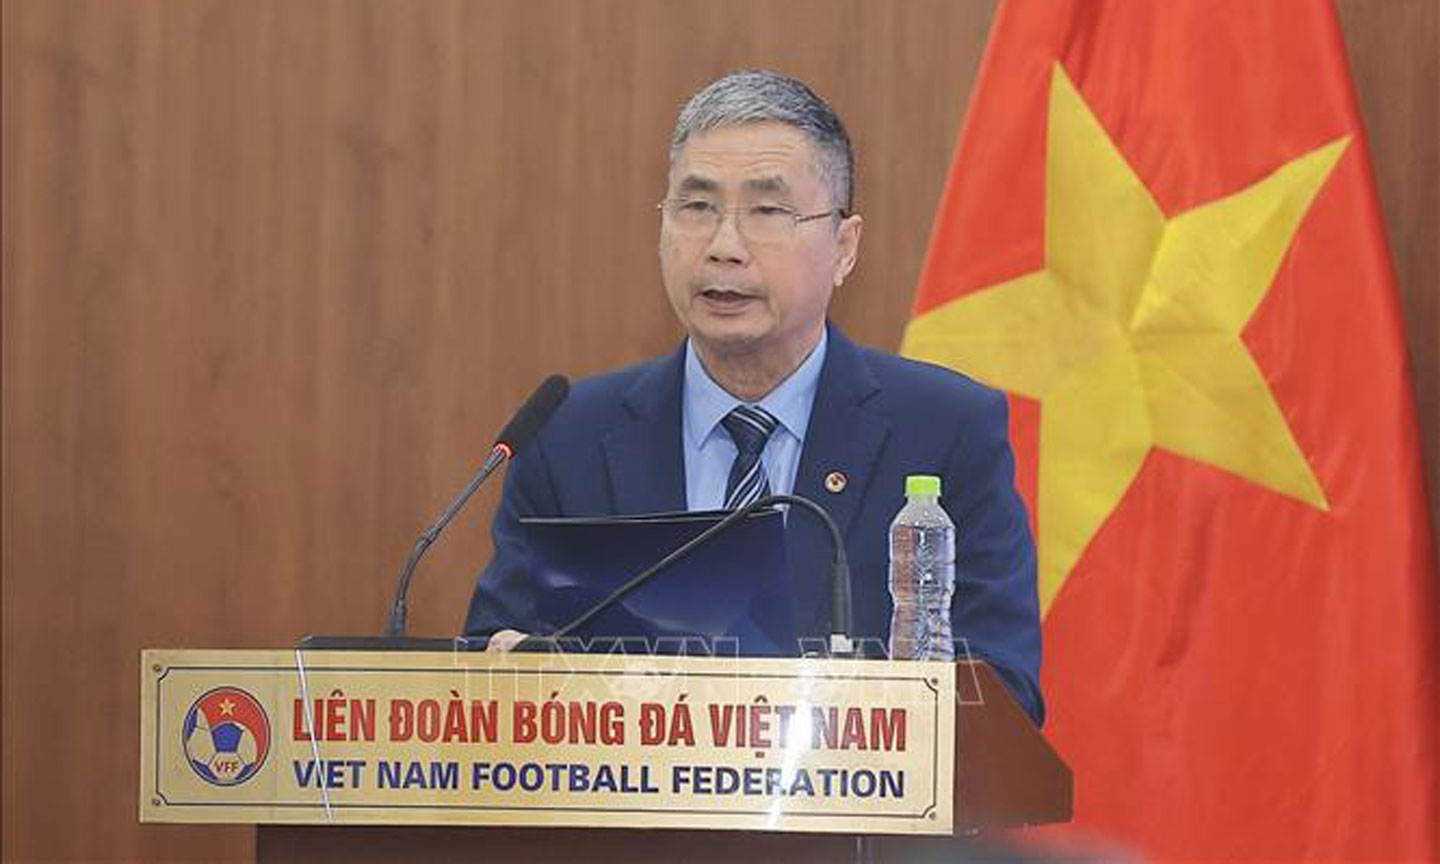 Ông Dương Nghiệp Khôi, Tổng Thư ký VFF phát biểu. Ảnh: Minh Quyết/TTXVN